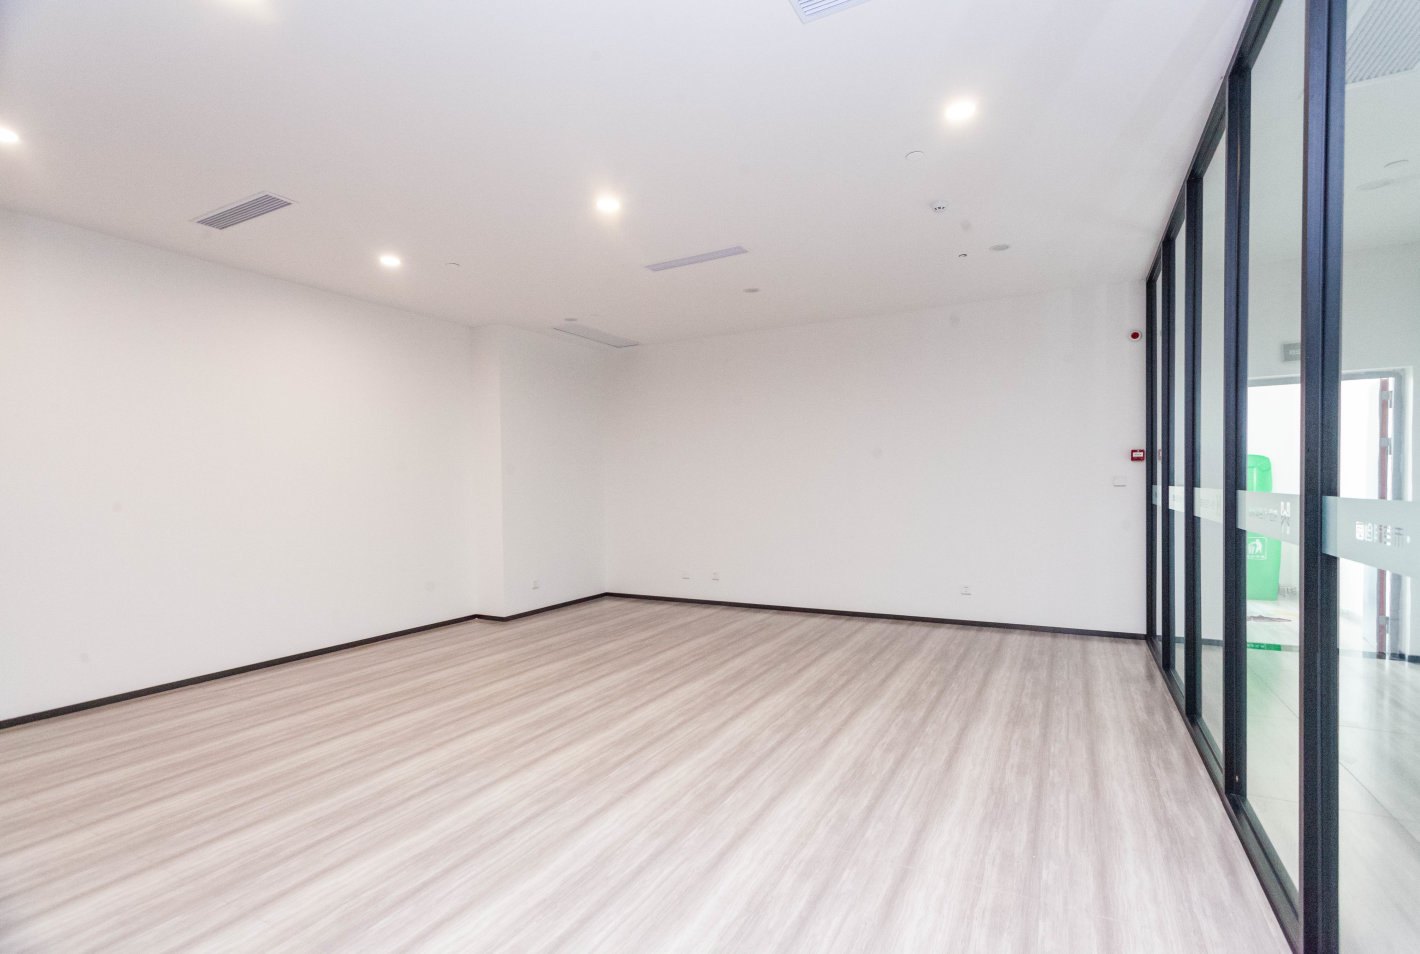 伟创禾谷科创园242平米办公室出租-租金价格1.83元/m²/天